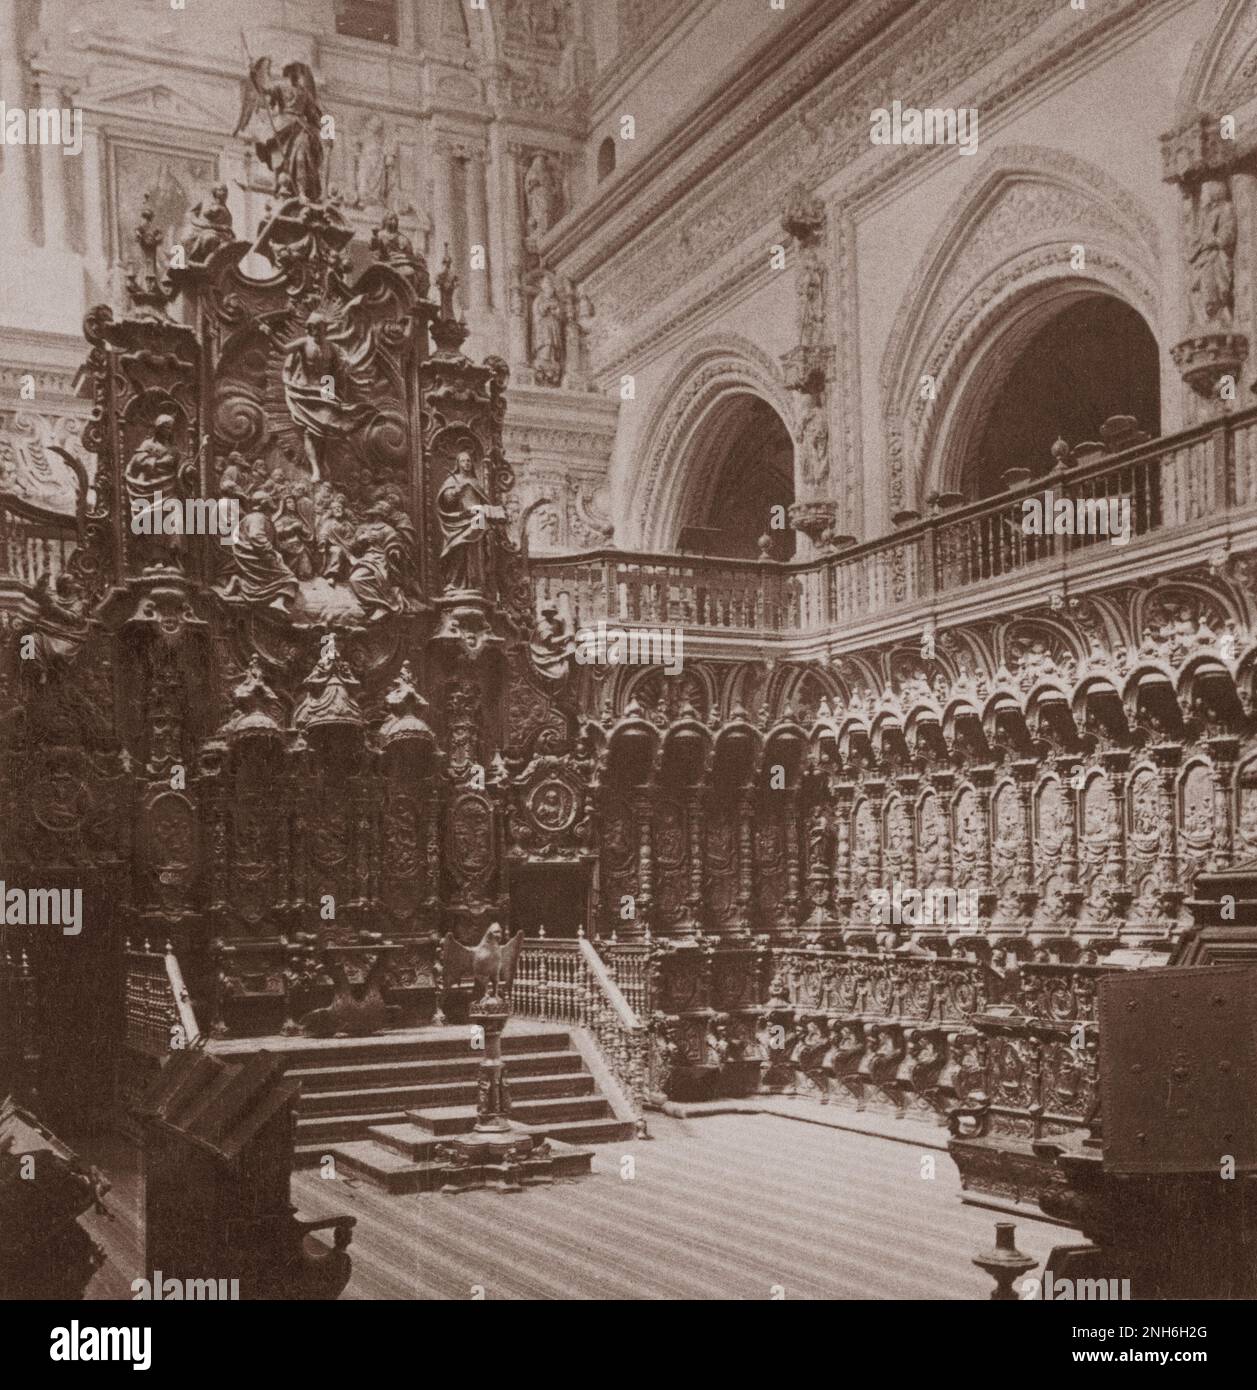 Architektur des alten Spaniens. Bischofssitz und Chor der Kathedrale-Moschee in Cordoba, Spanien. 1902 Stockfoto